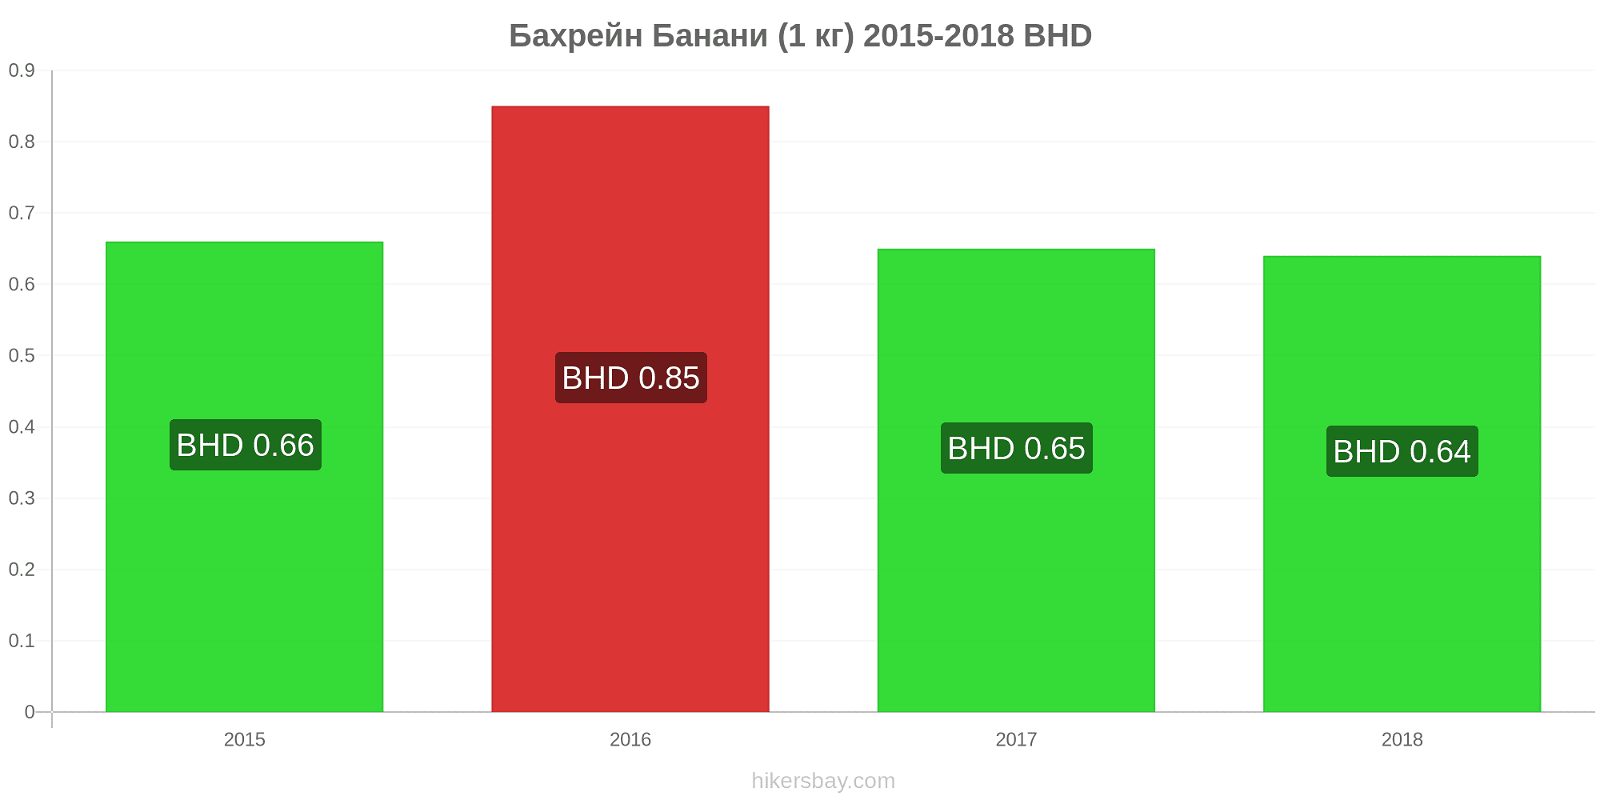 Бахрейн зміни цін Банани (1 кг) hikersbay.com